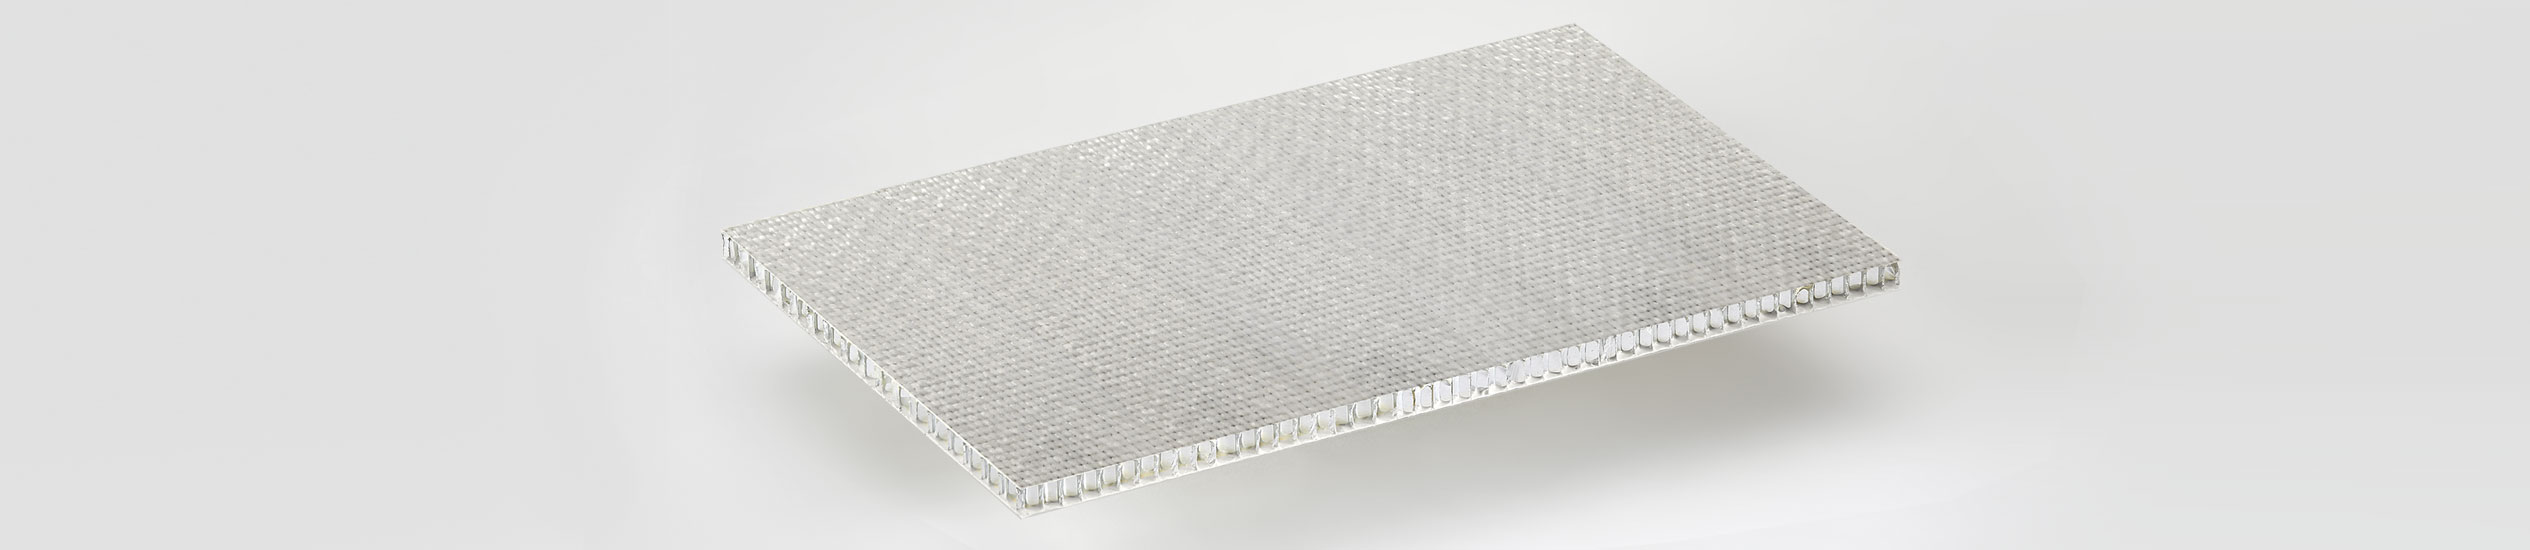 panel sándwich y honeycomb preimpregnado, para aligeramento mármol y mosaicos ALUSTEP 500 SL.